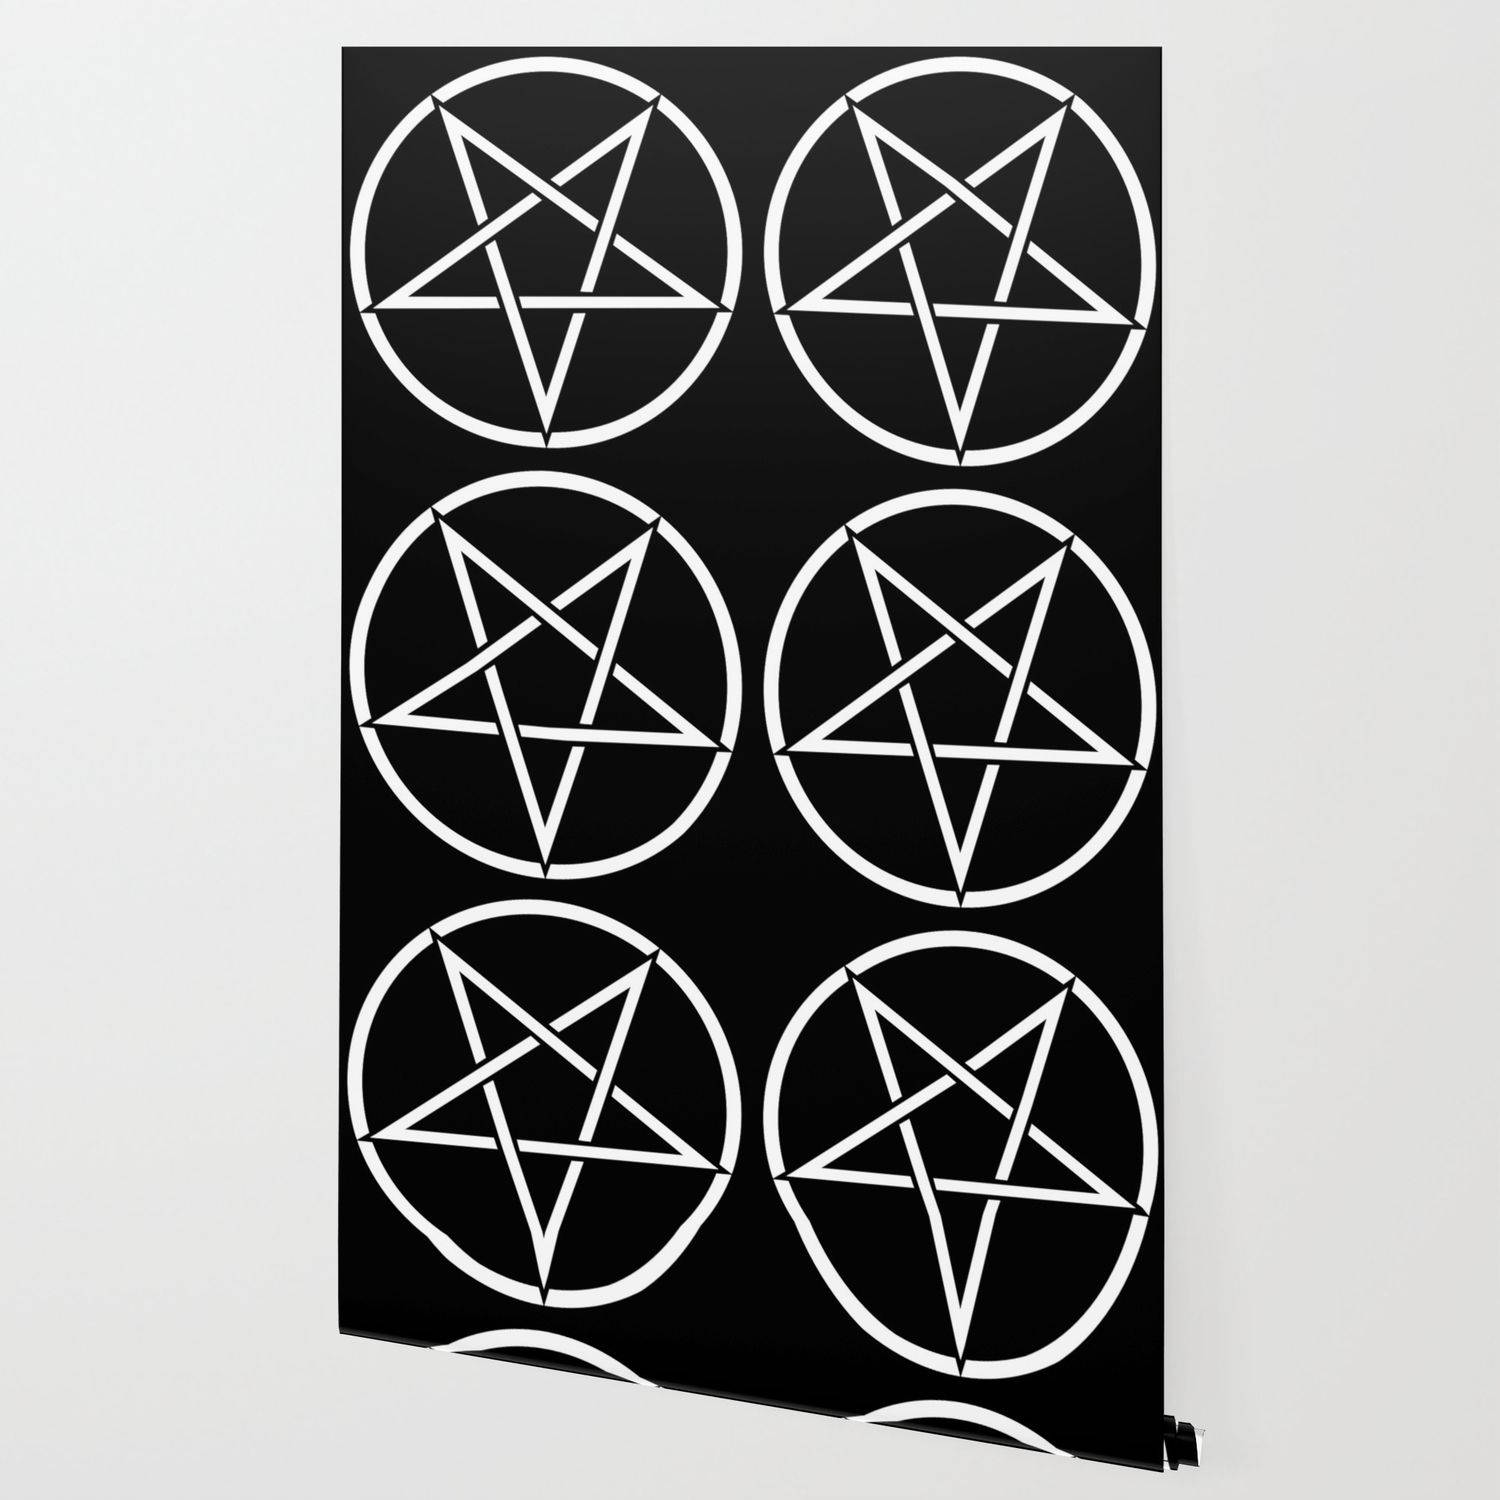 Six Pentagrams In Black